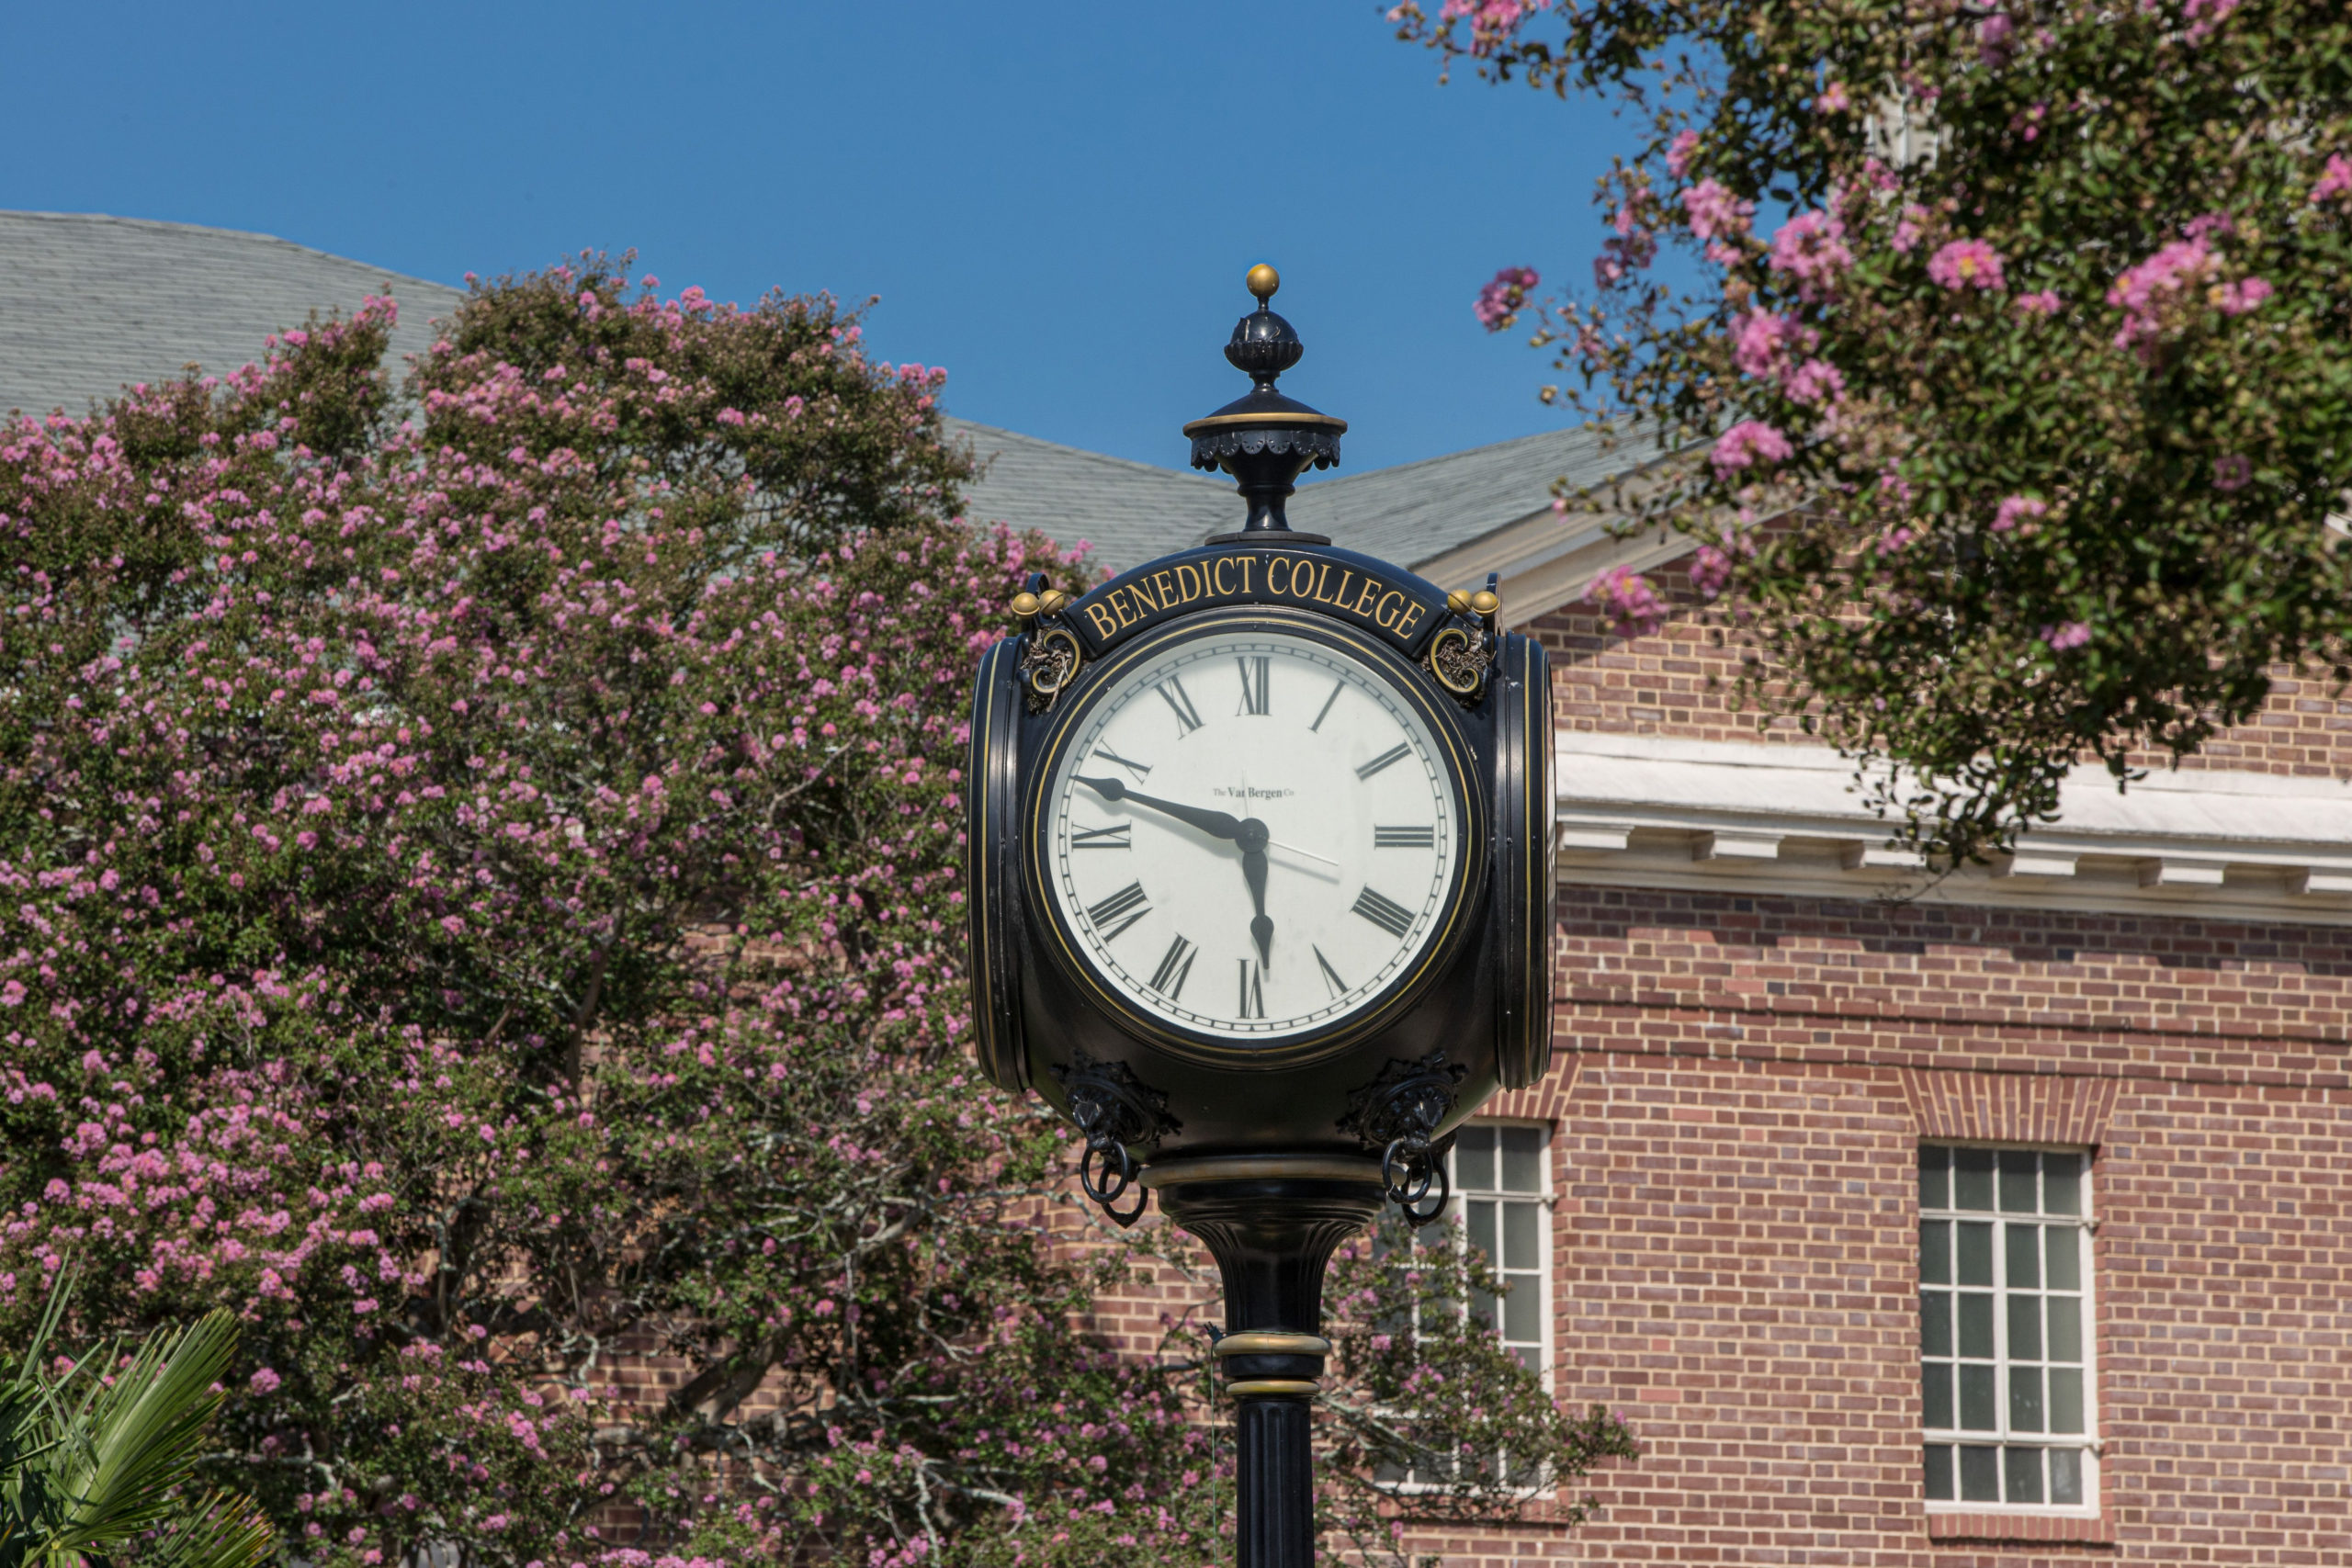 Benedict College Clock close up scaled